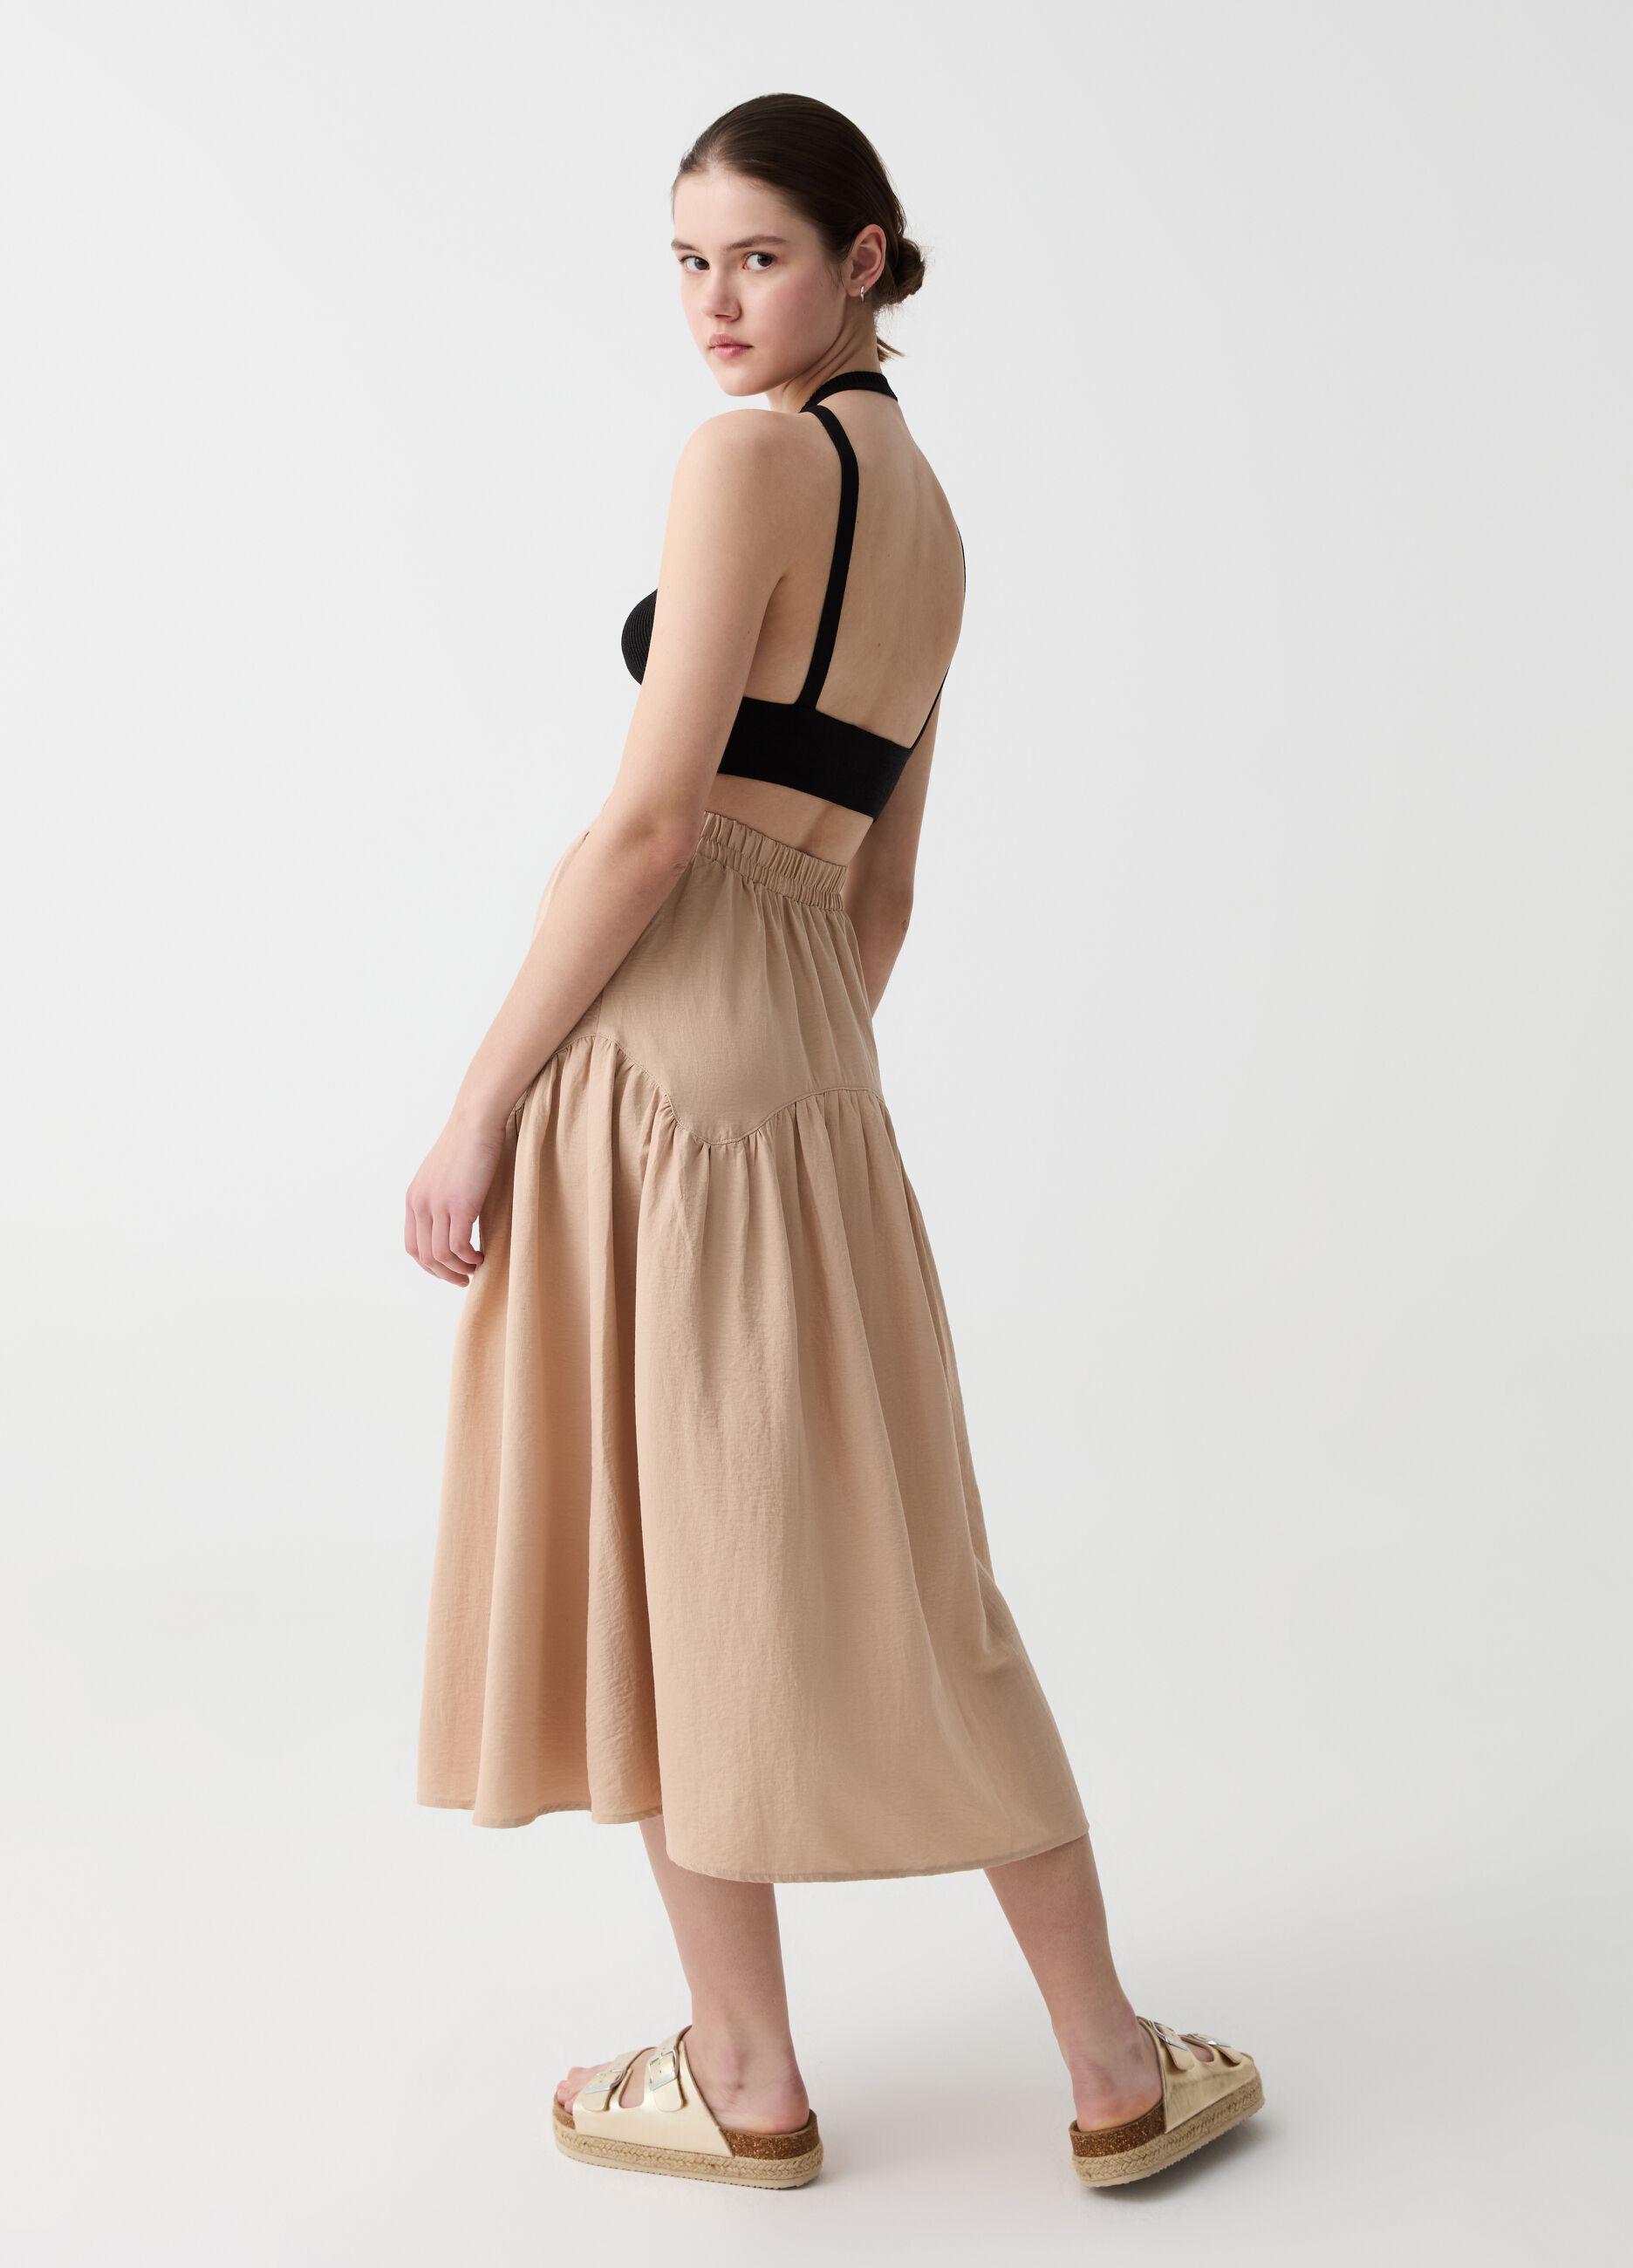 Midi skirt with flounce